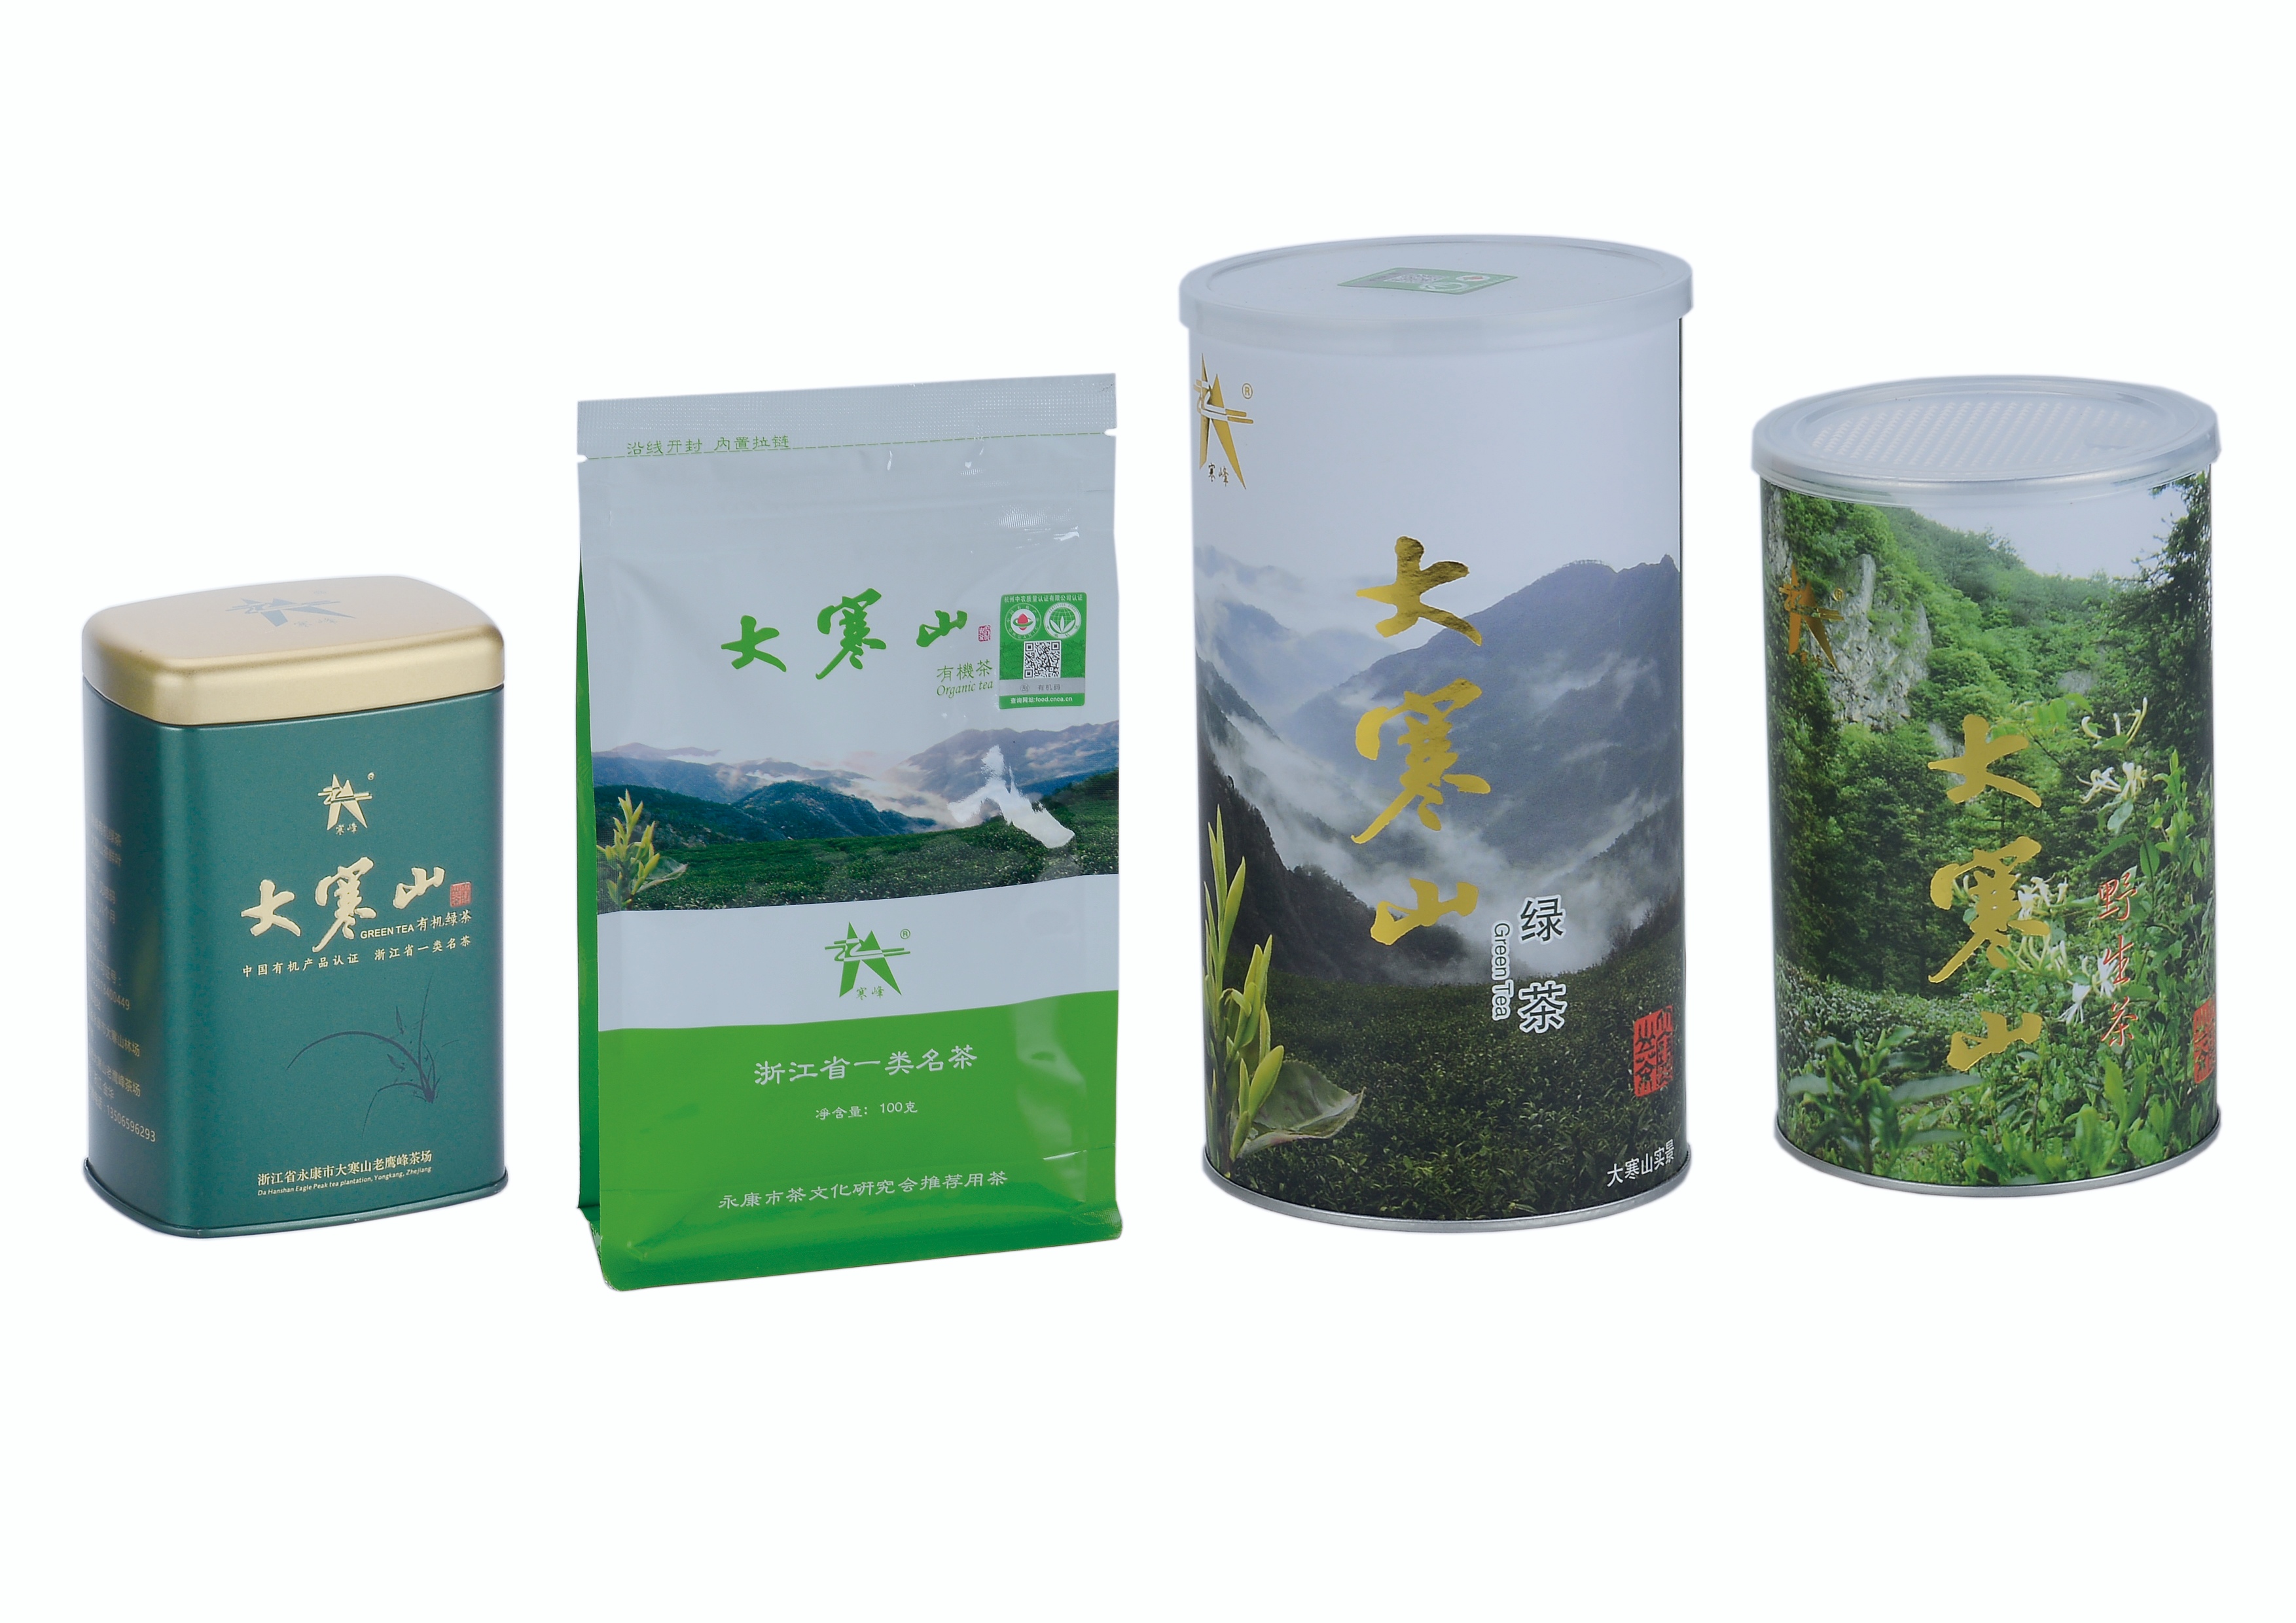 大寒山森林绿茶有机茶绿茶高山有机茶义乌国际森林博览会参展产品图